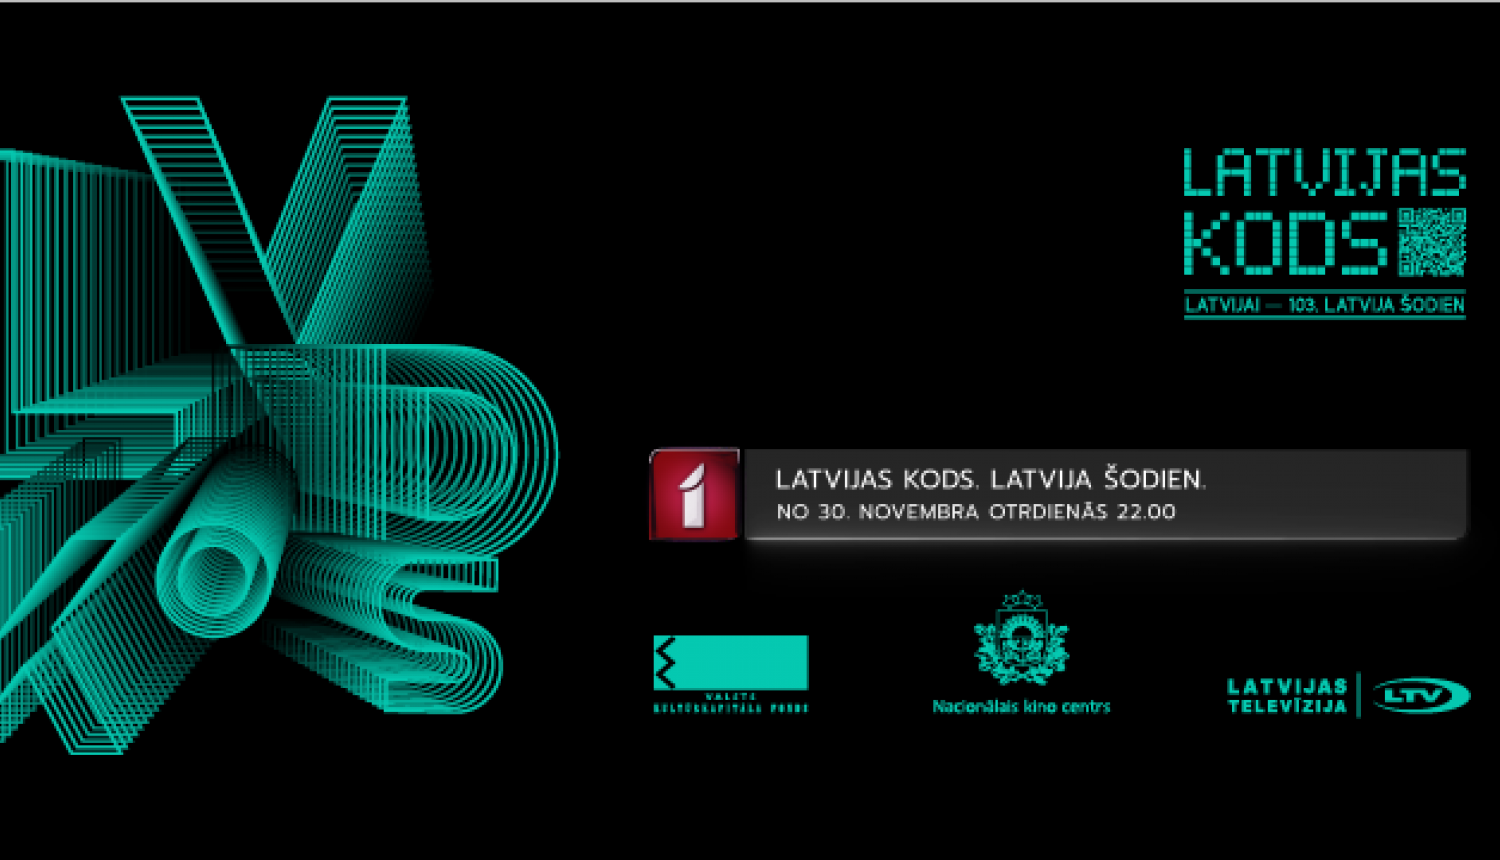 “Latvijas kods. Latvija šodien” vizuālais materiāls